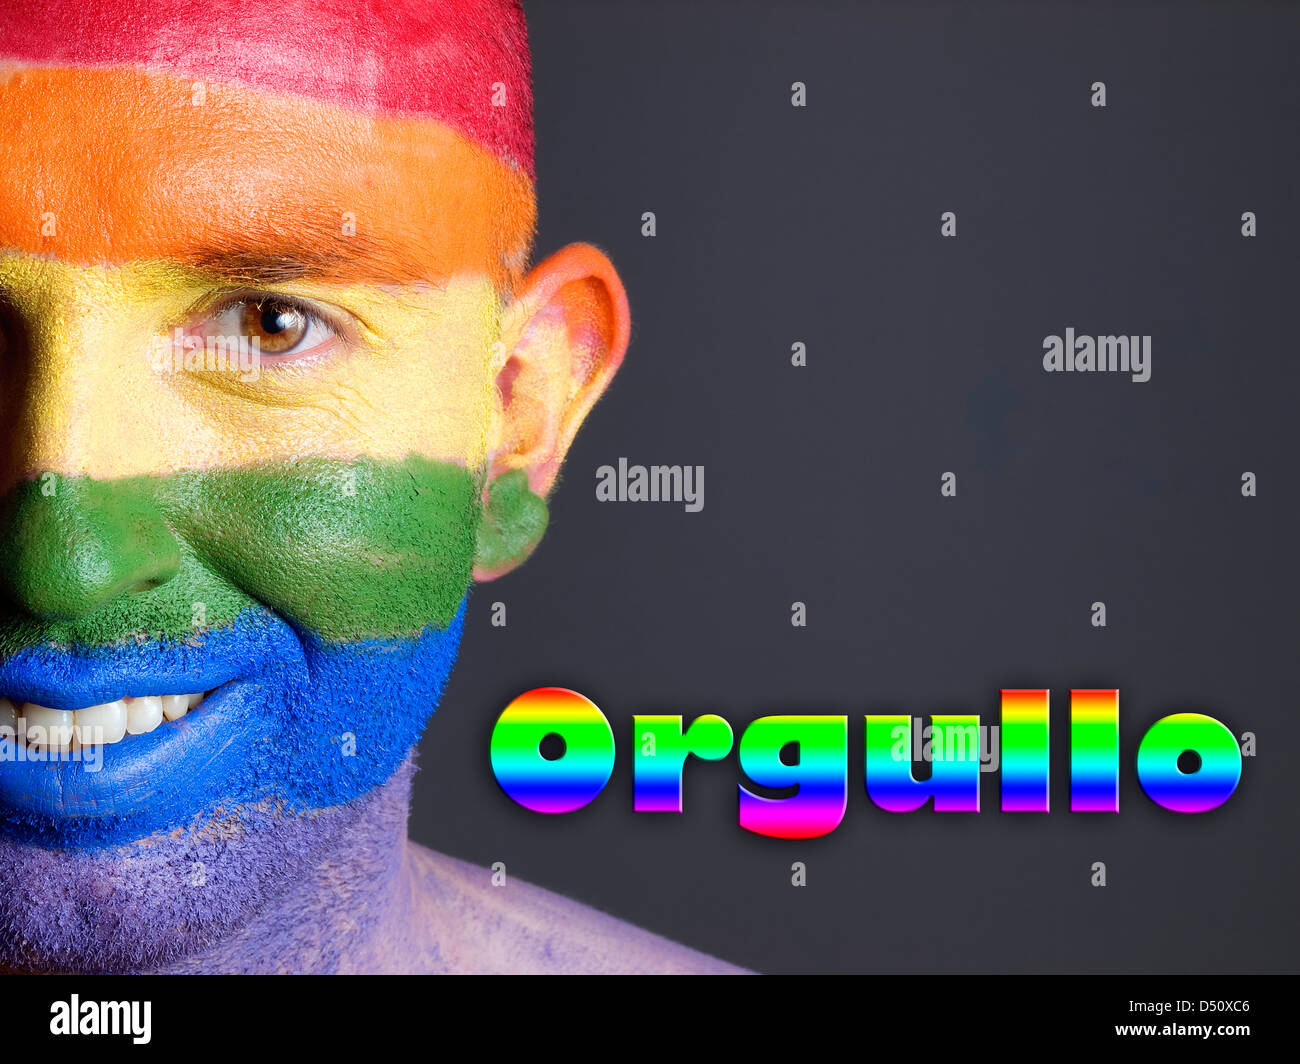 Hombre con la bandera gay pintada en la cara y sonriendo. La palabra 'orgullo' esta escrita en un lado. Stock Photo